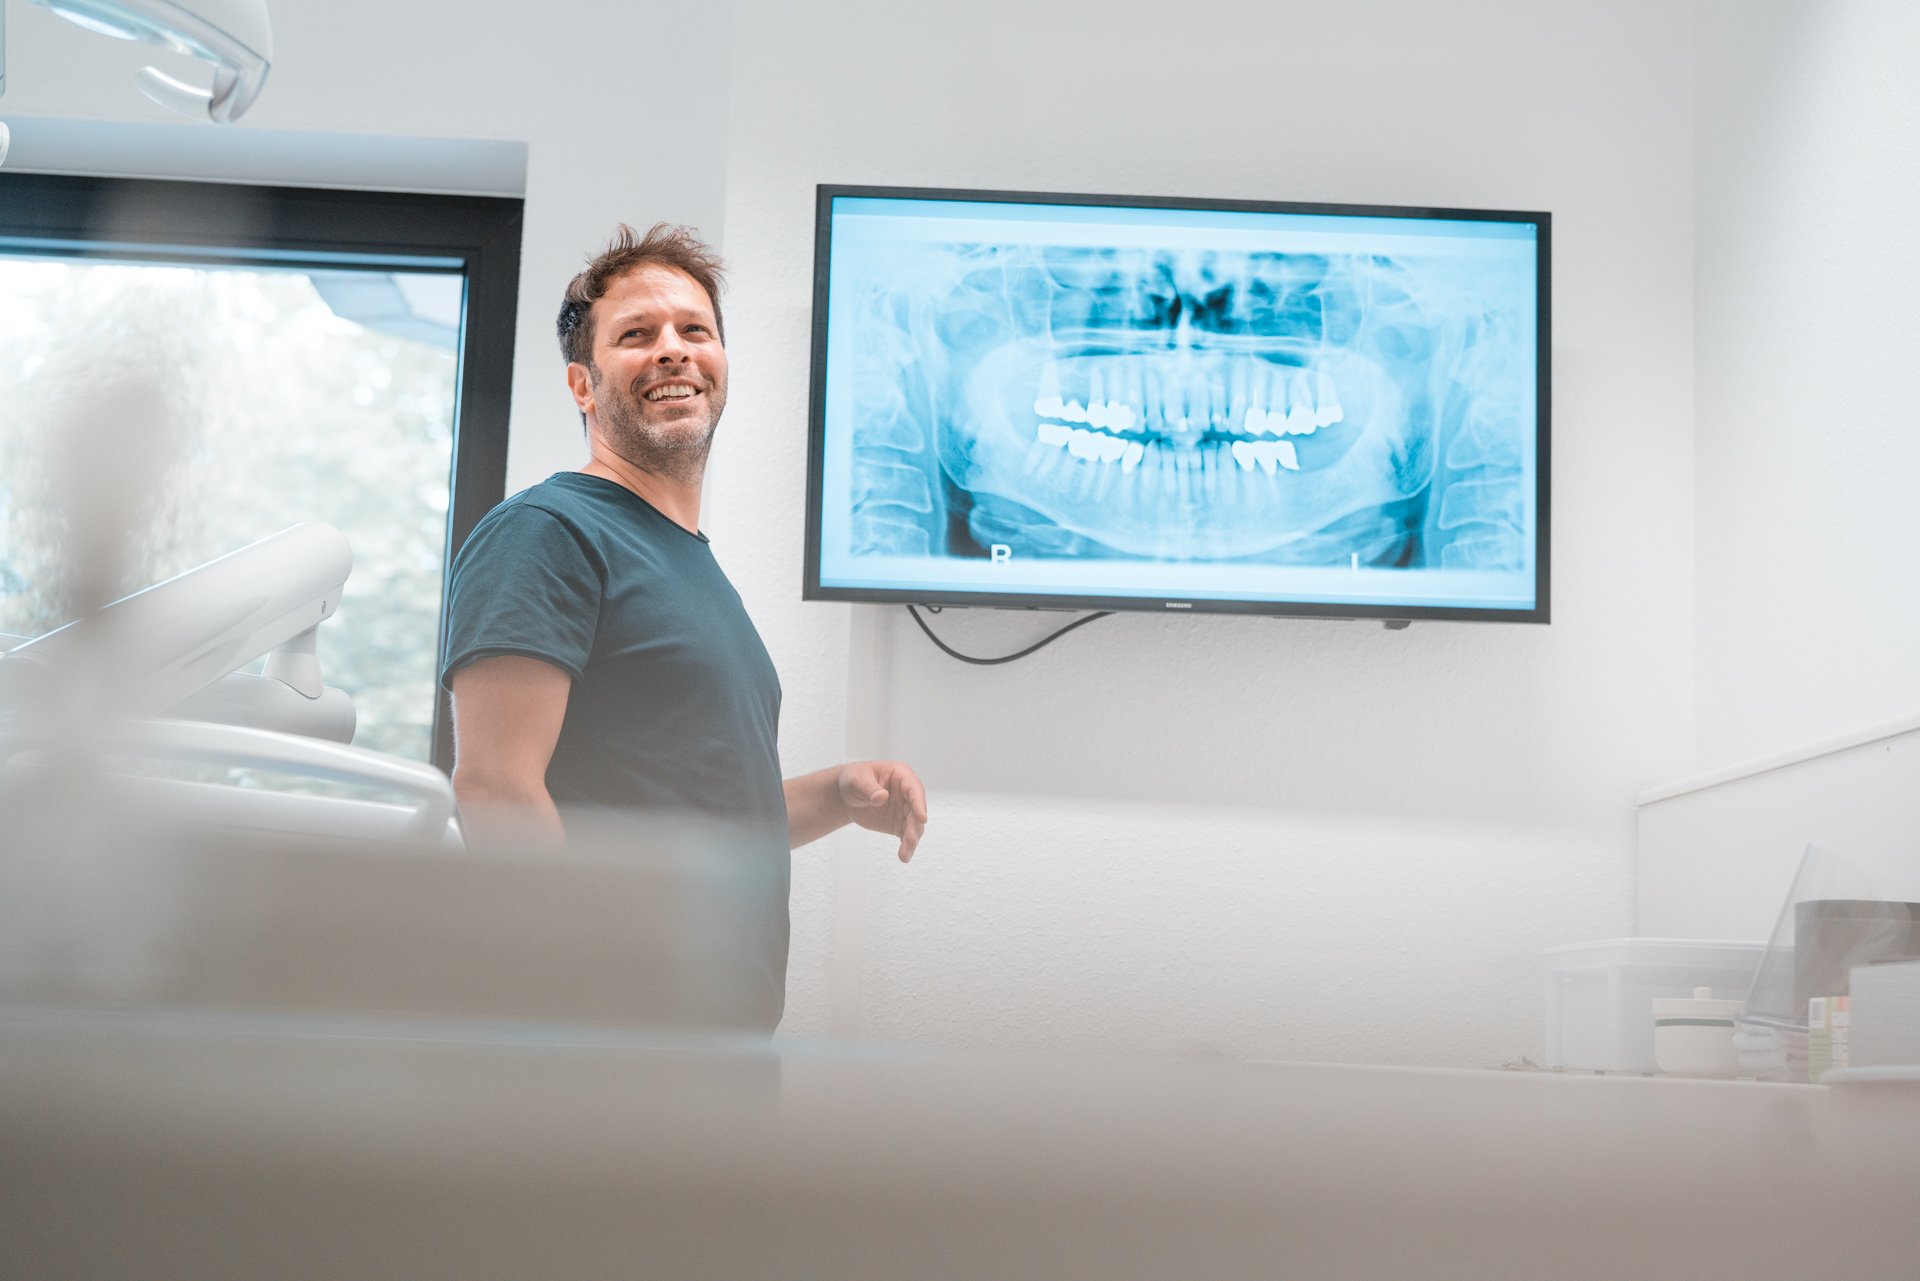 Zahnarzt erklärt dem Patienten die Röntgenaufnahme